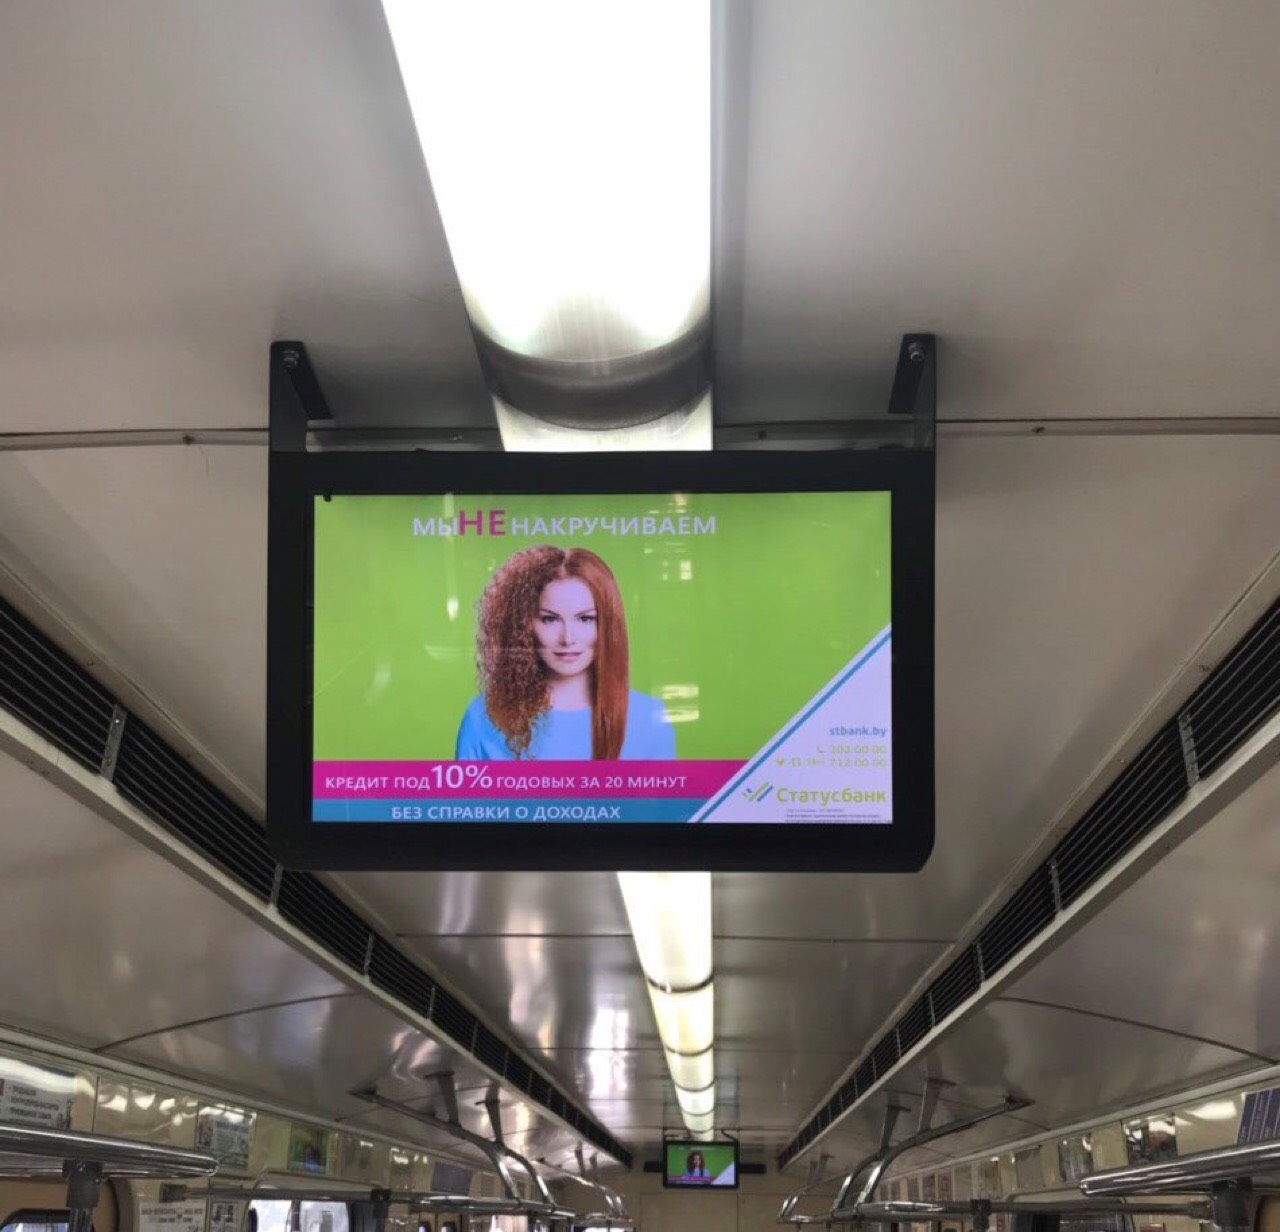 Продаётся рекламный бизнес: LCD экраны в вагонах метро